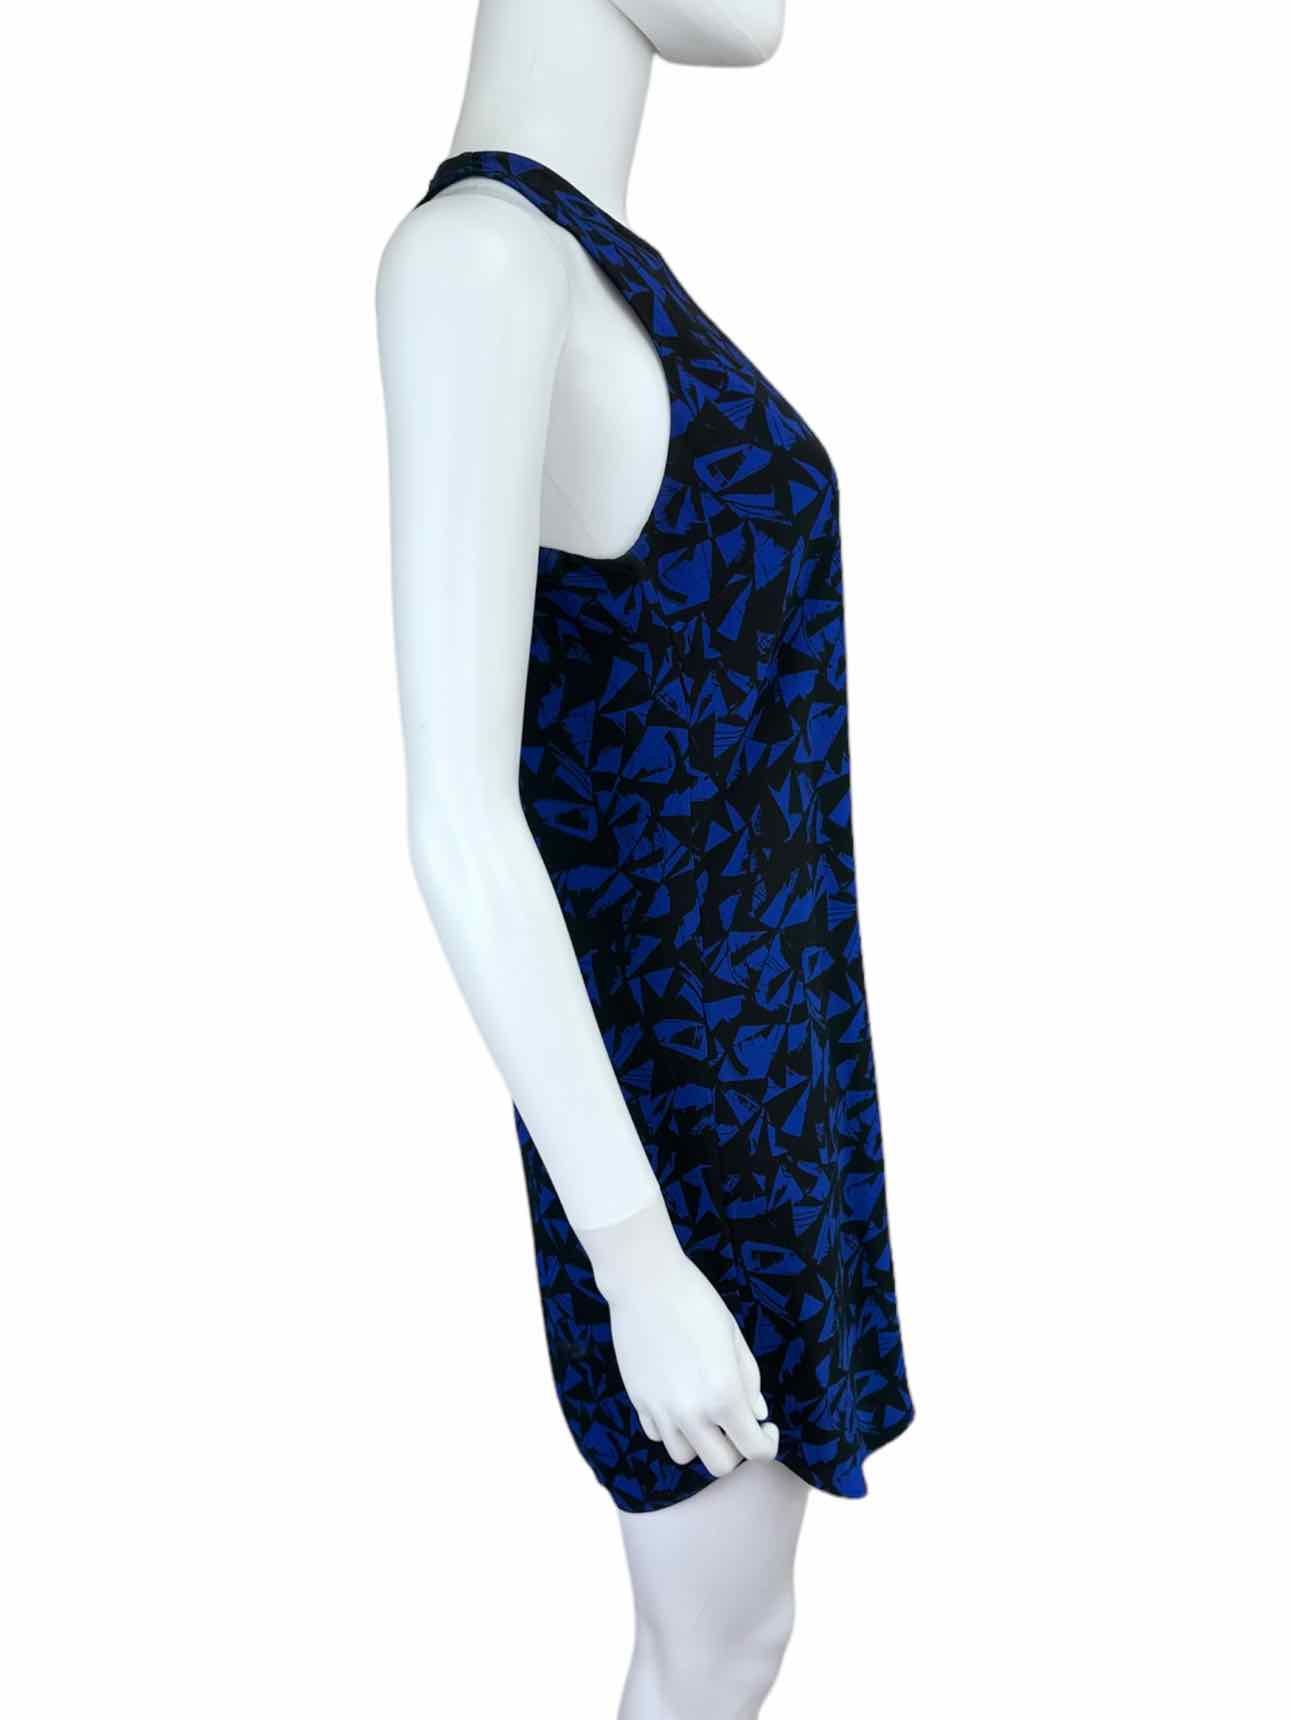 A.L.C Blue Geo Print Dress Size 2